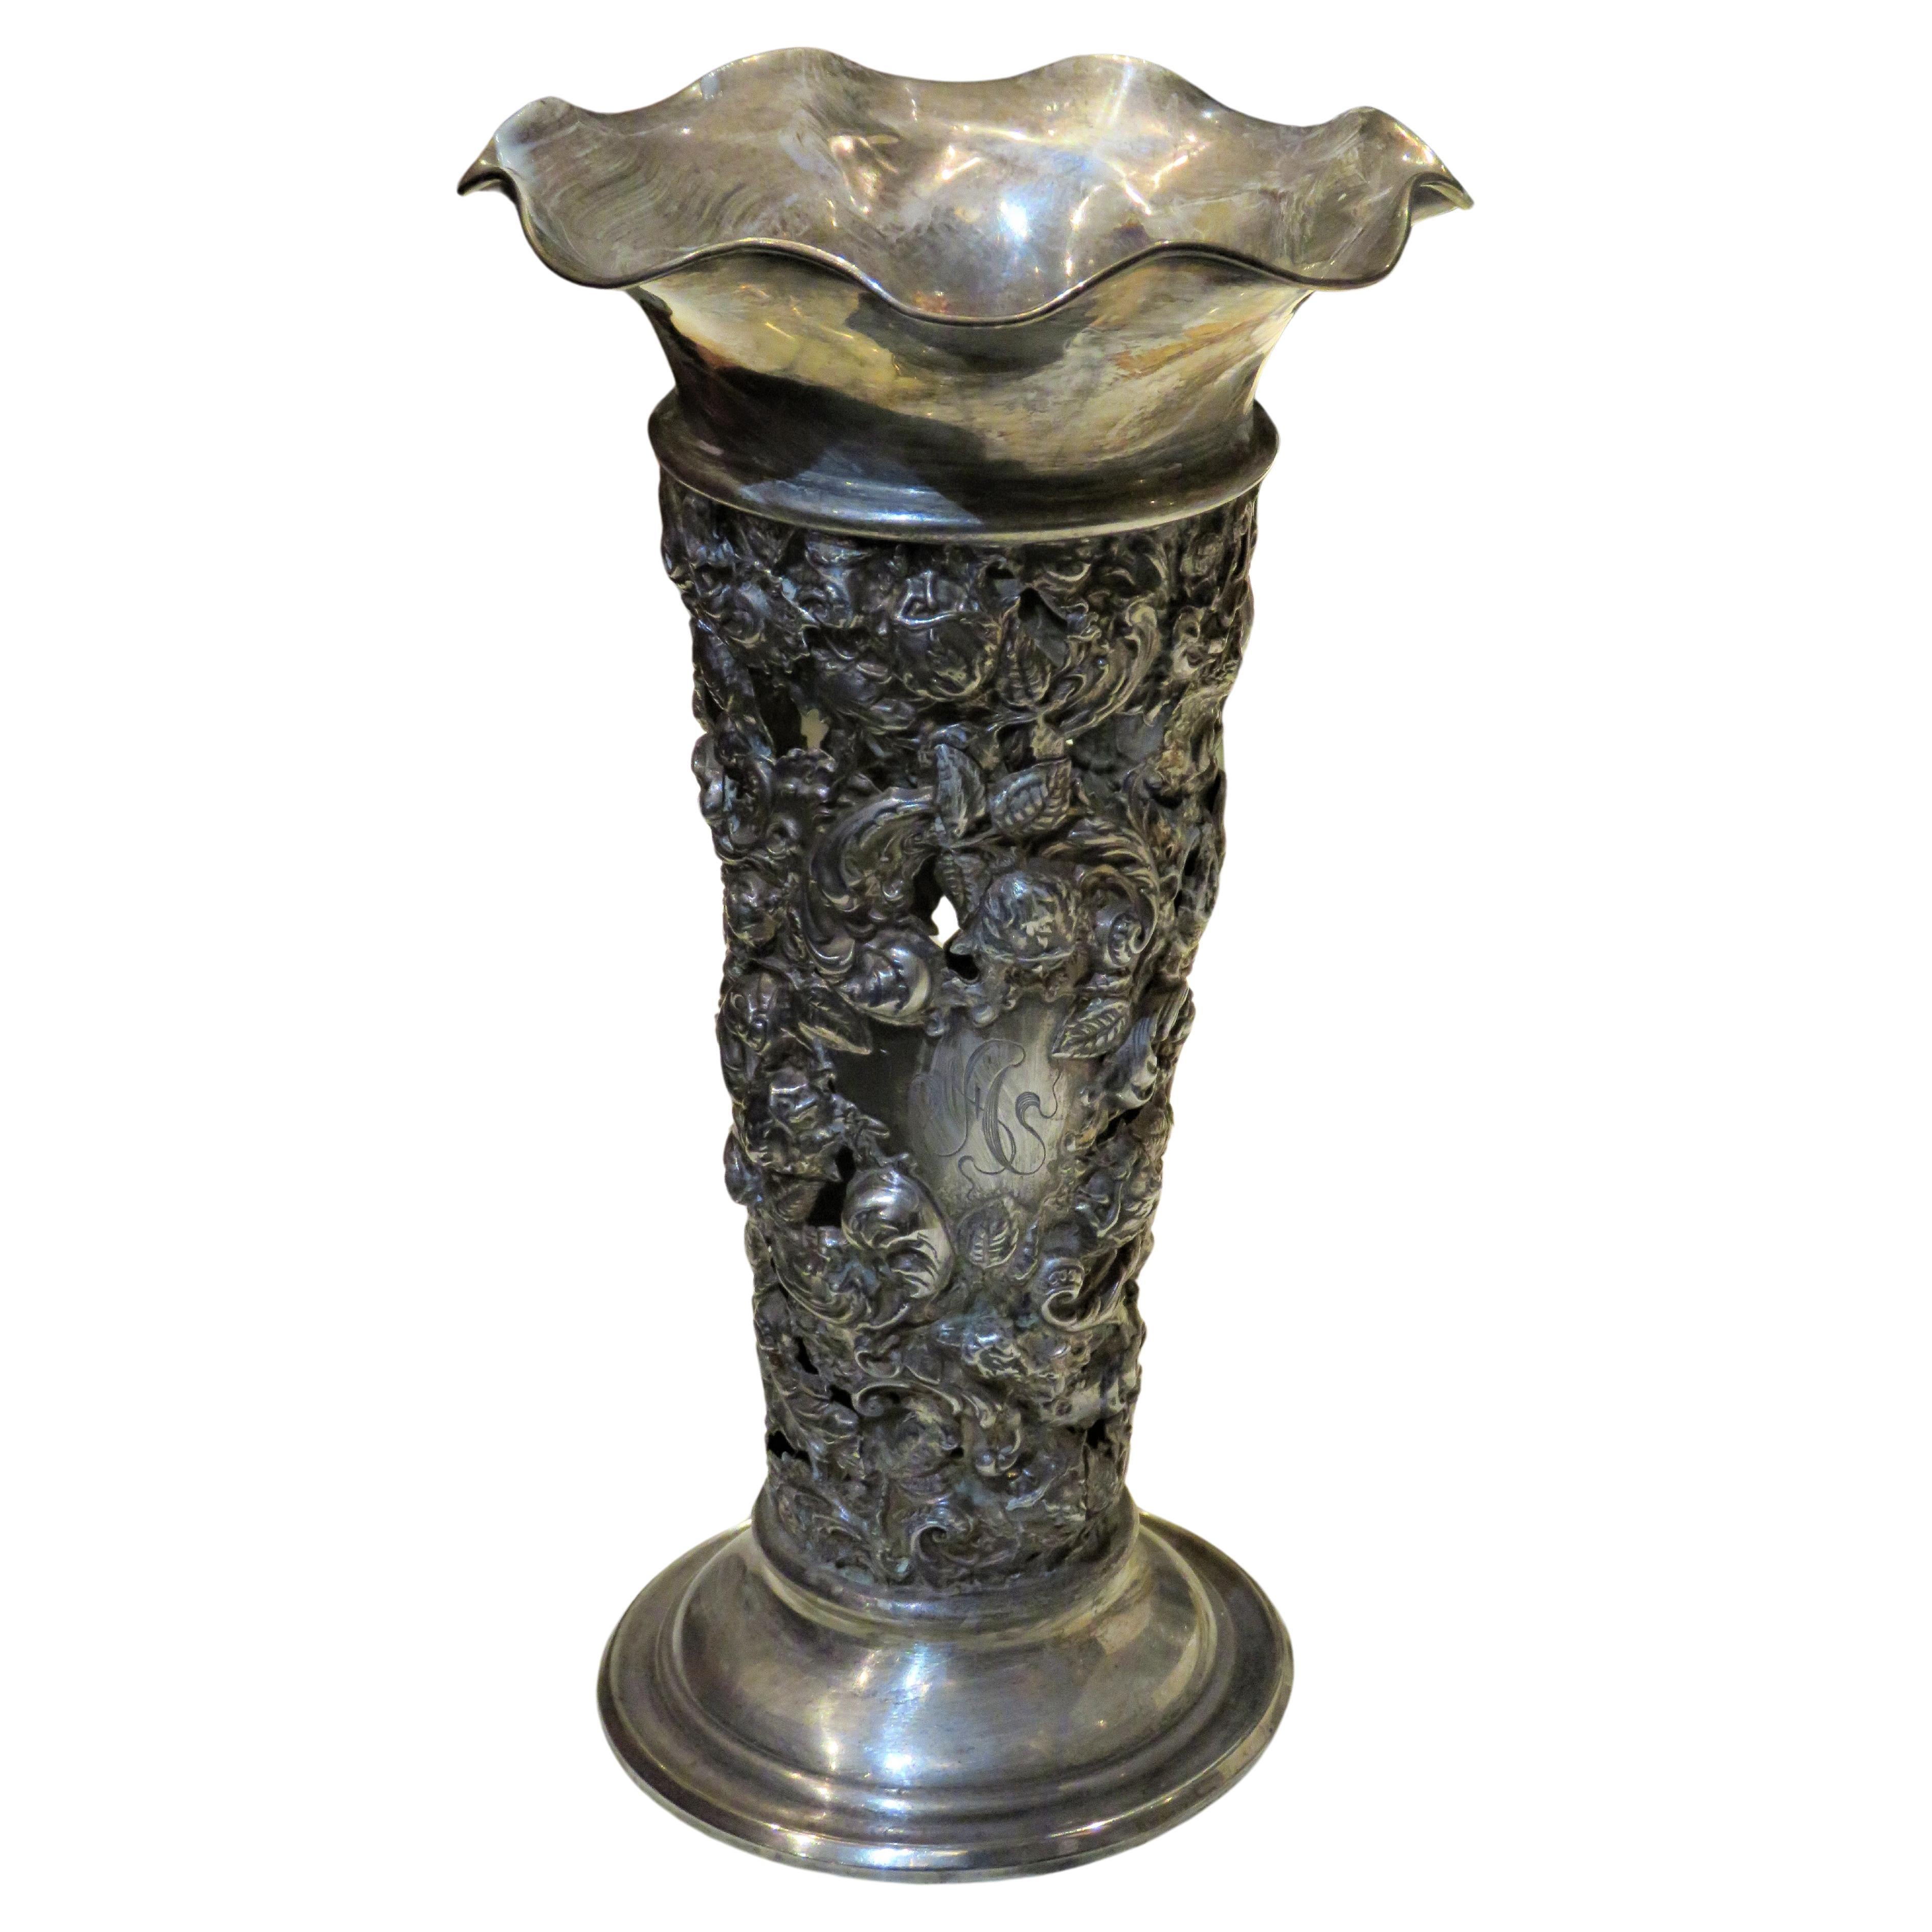 Seltene Exquisite 19TH Jahrhundert Französisch Sterling Silber Heavy Relief Floral Vase